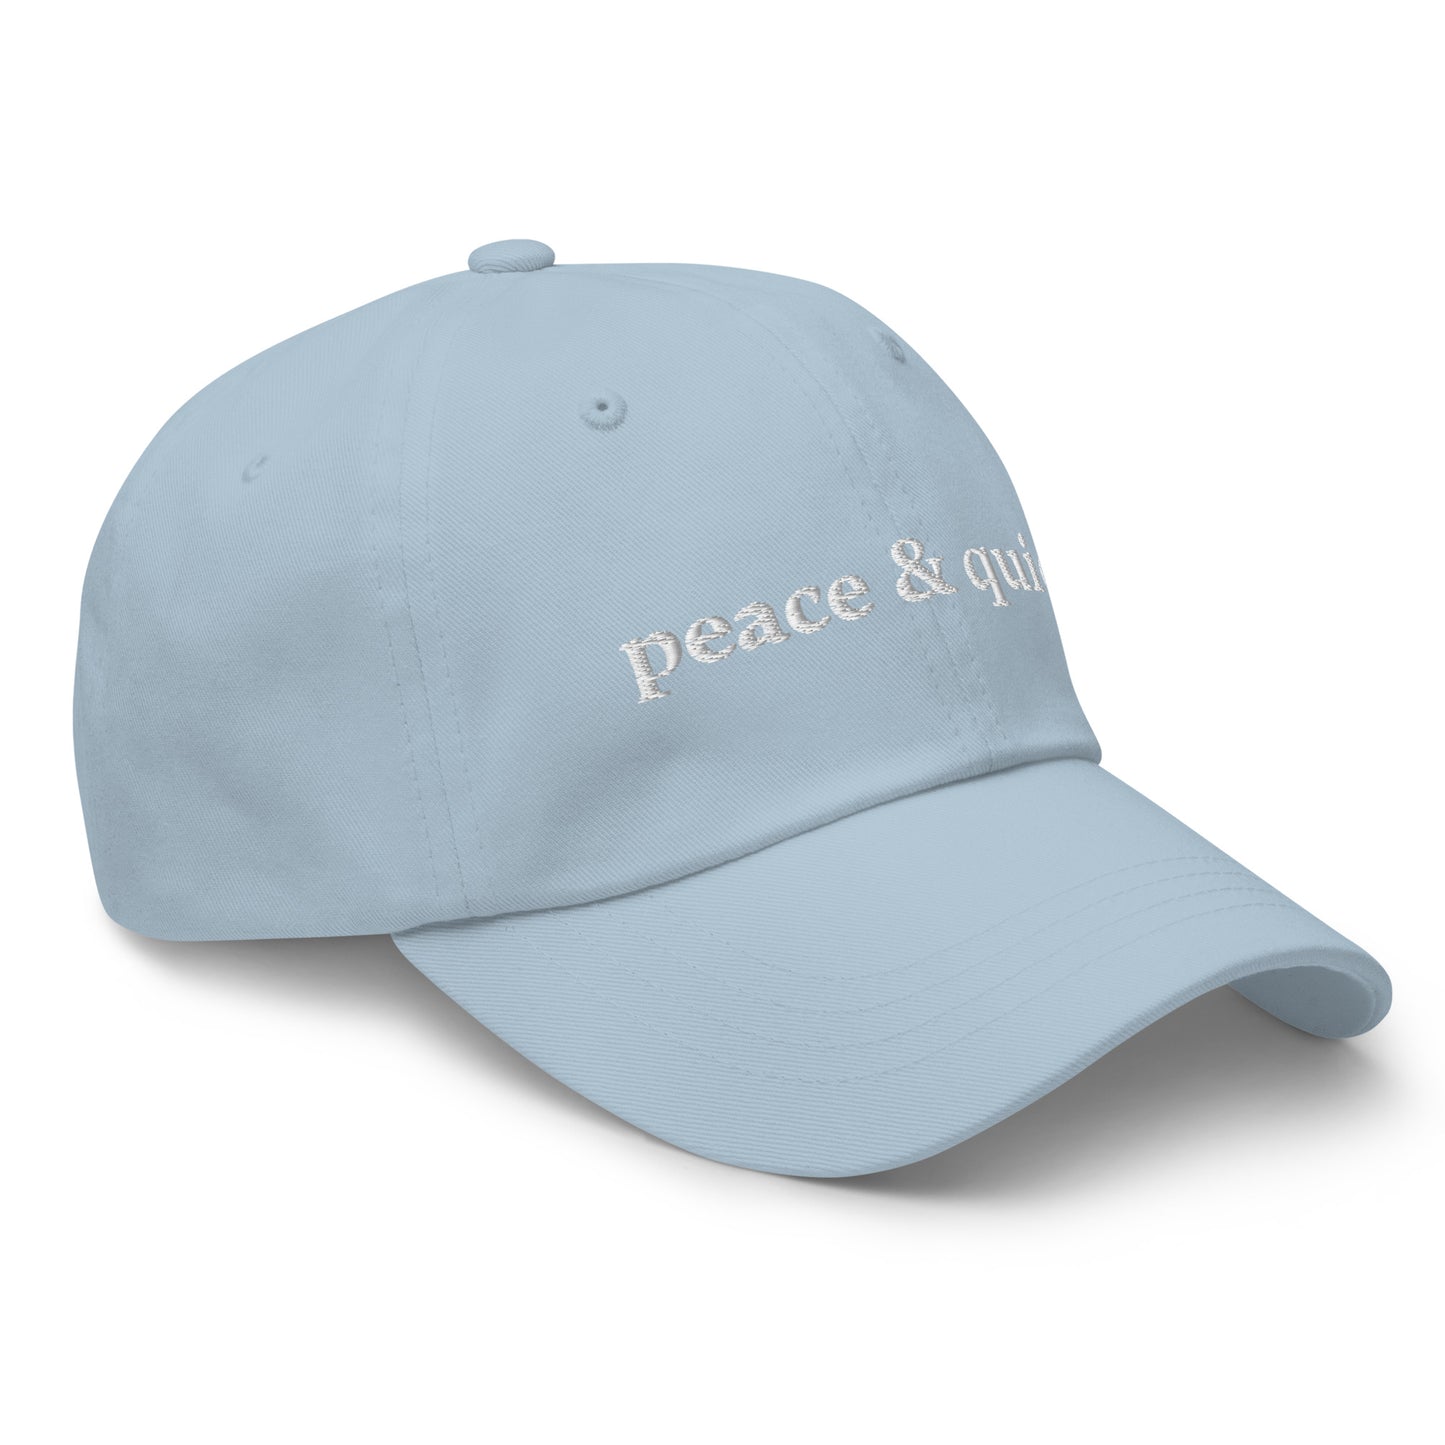 Peace & Quiet Hat